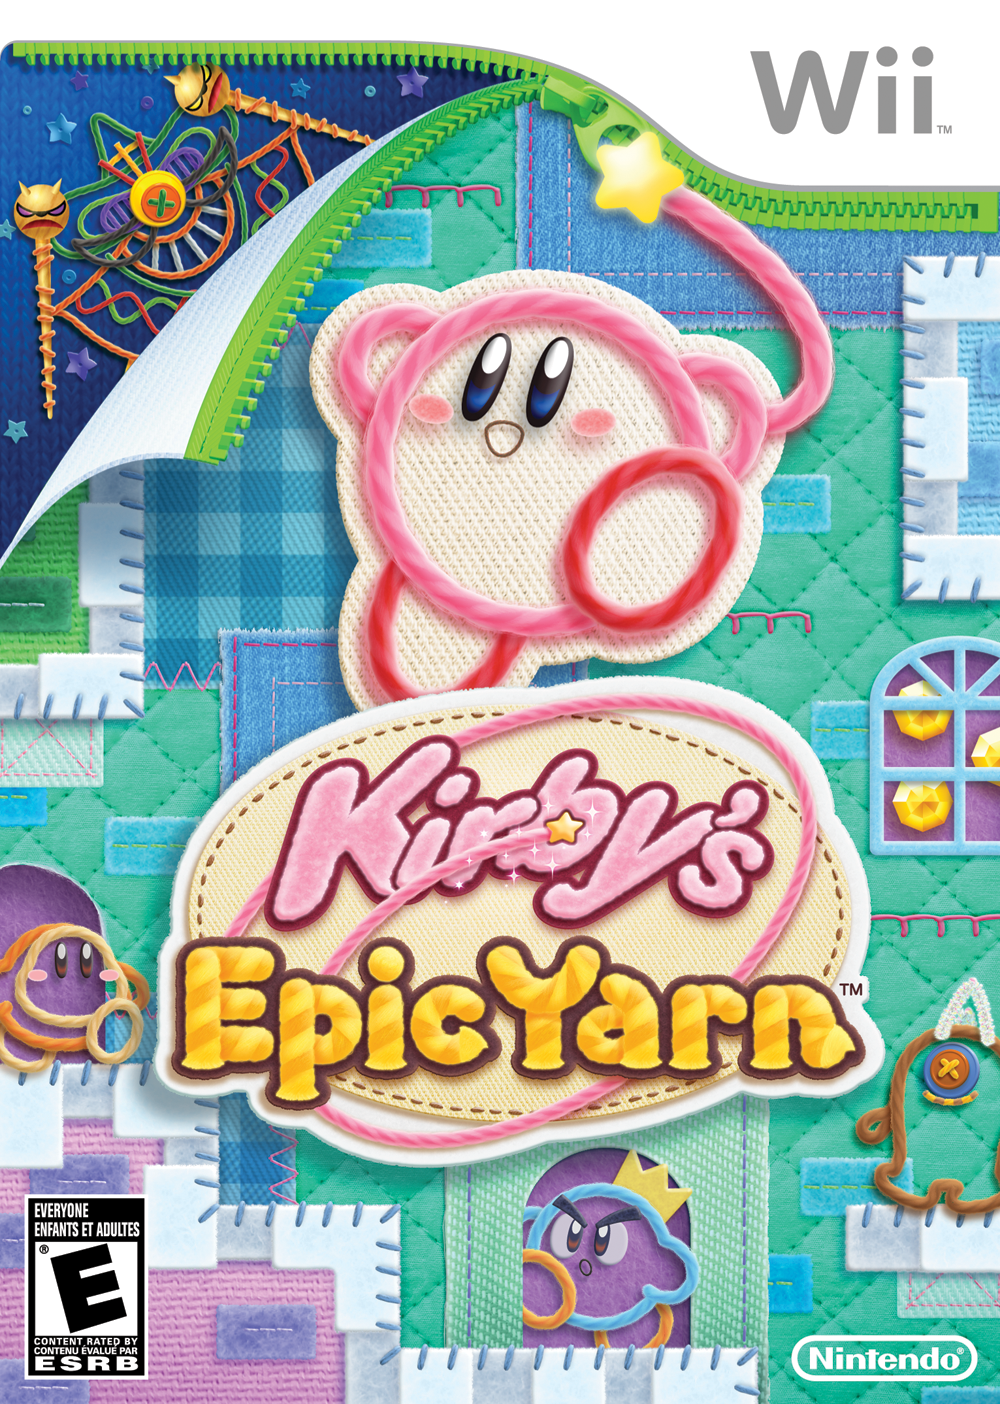 Dedede Gogogo - WiKirby: it's a wiki, about Kirby!